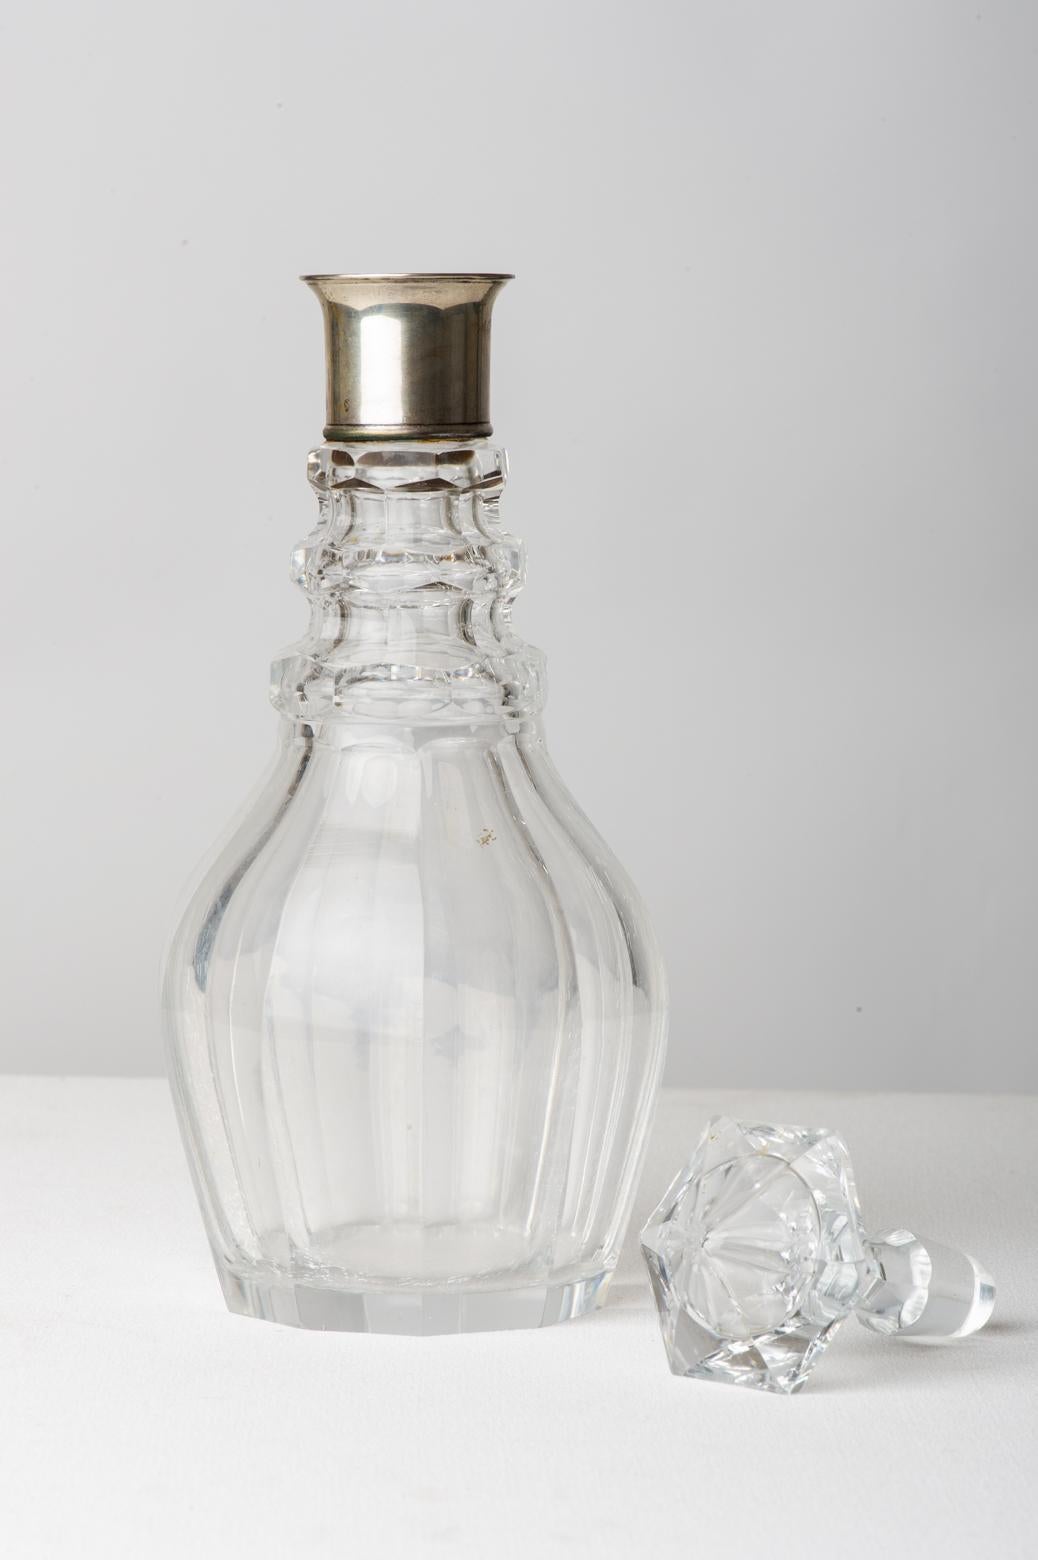 Elegant vieux décanteur en cristal avec col en argent : parfait dans votre coin bar. Une idée aussi pour un cadeau.
 


réf O/1959-2 